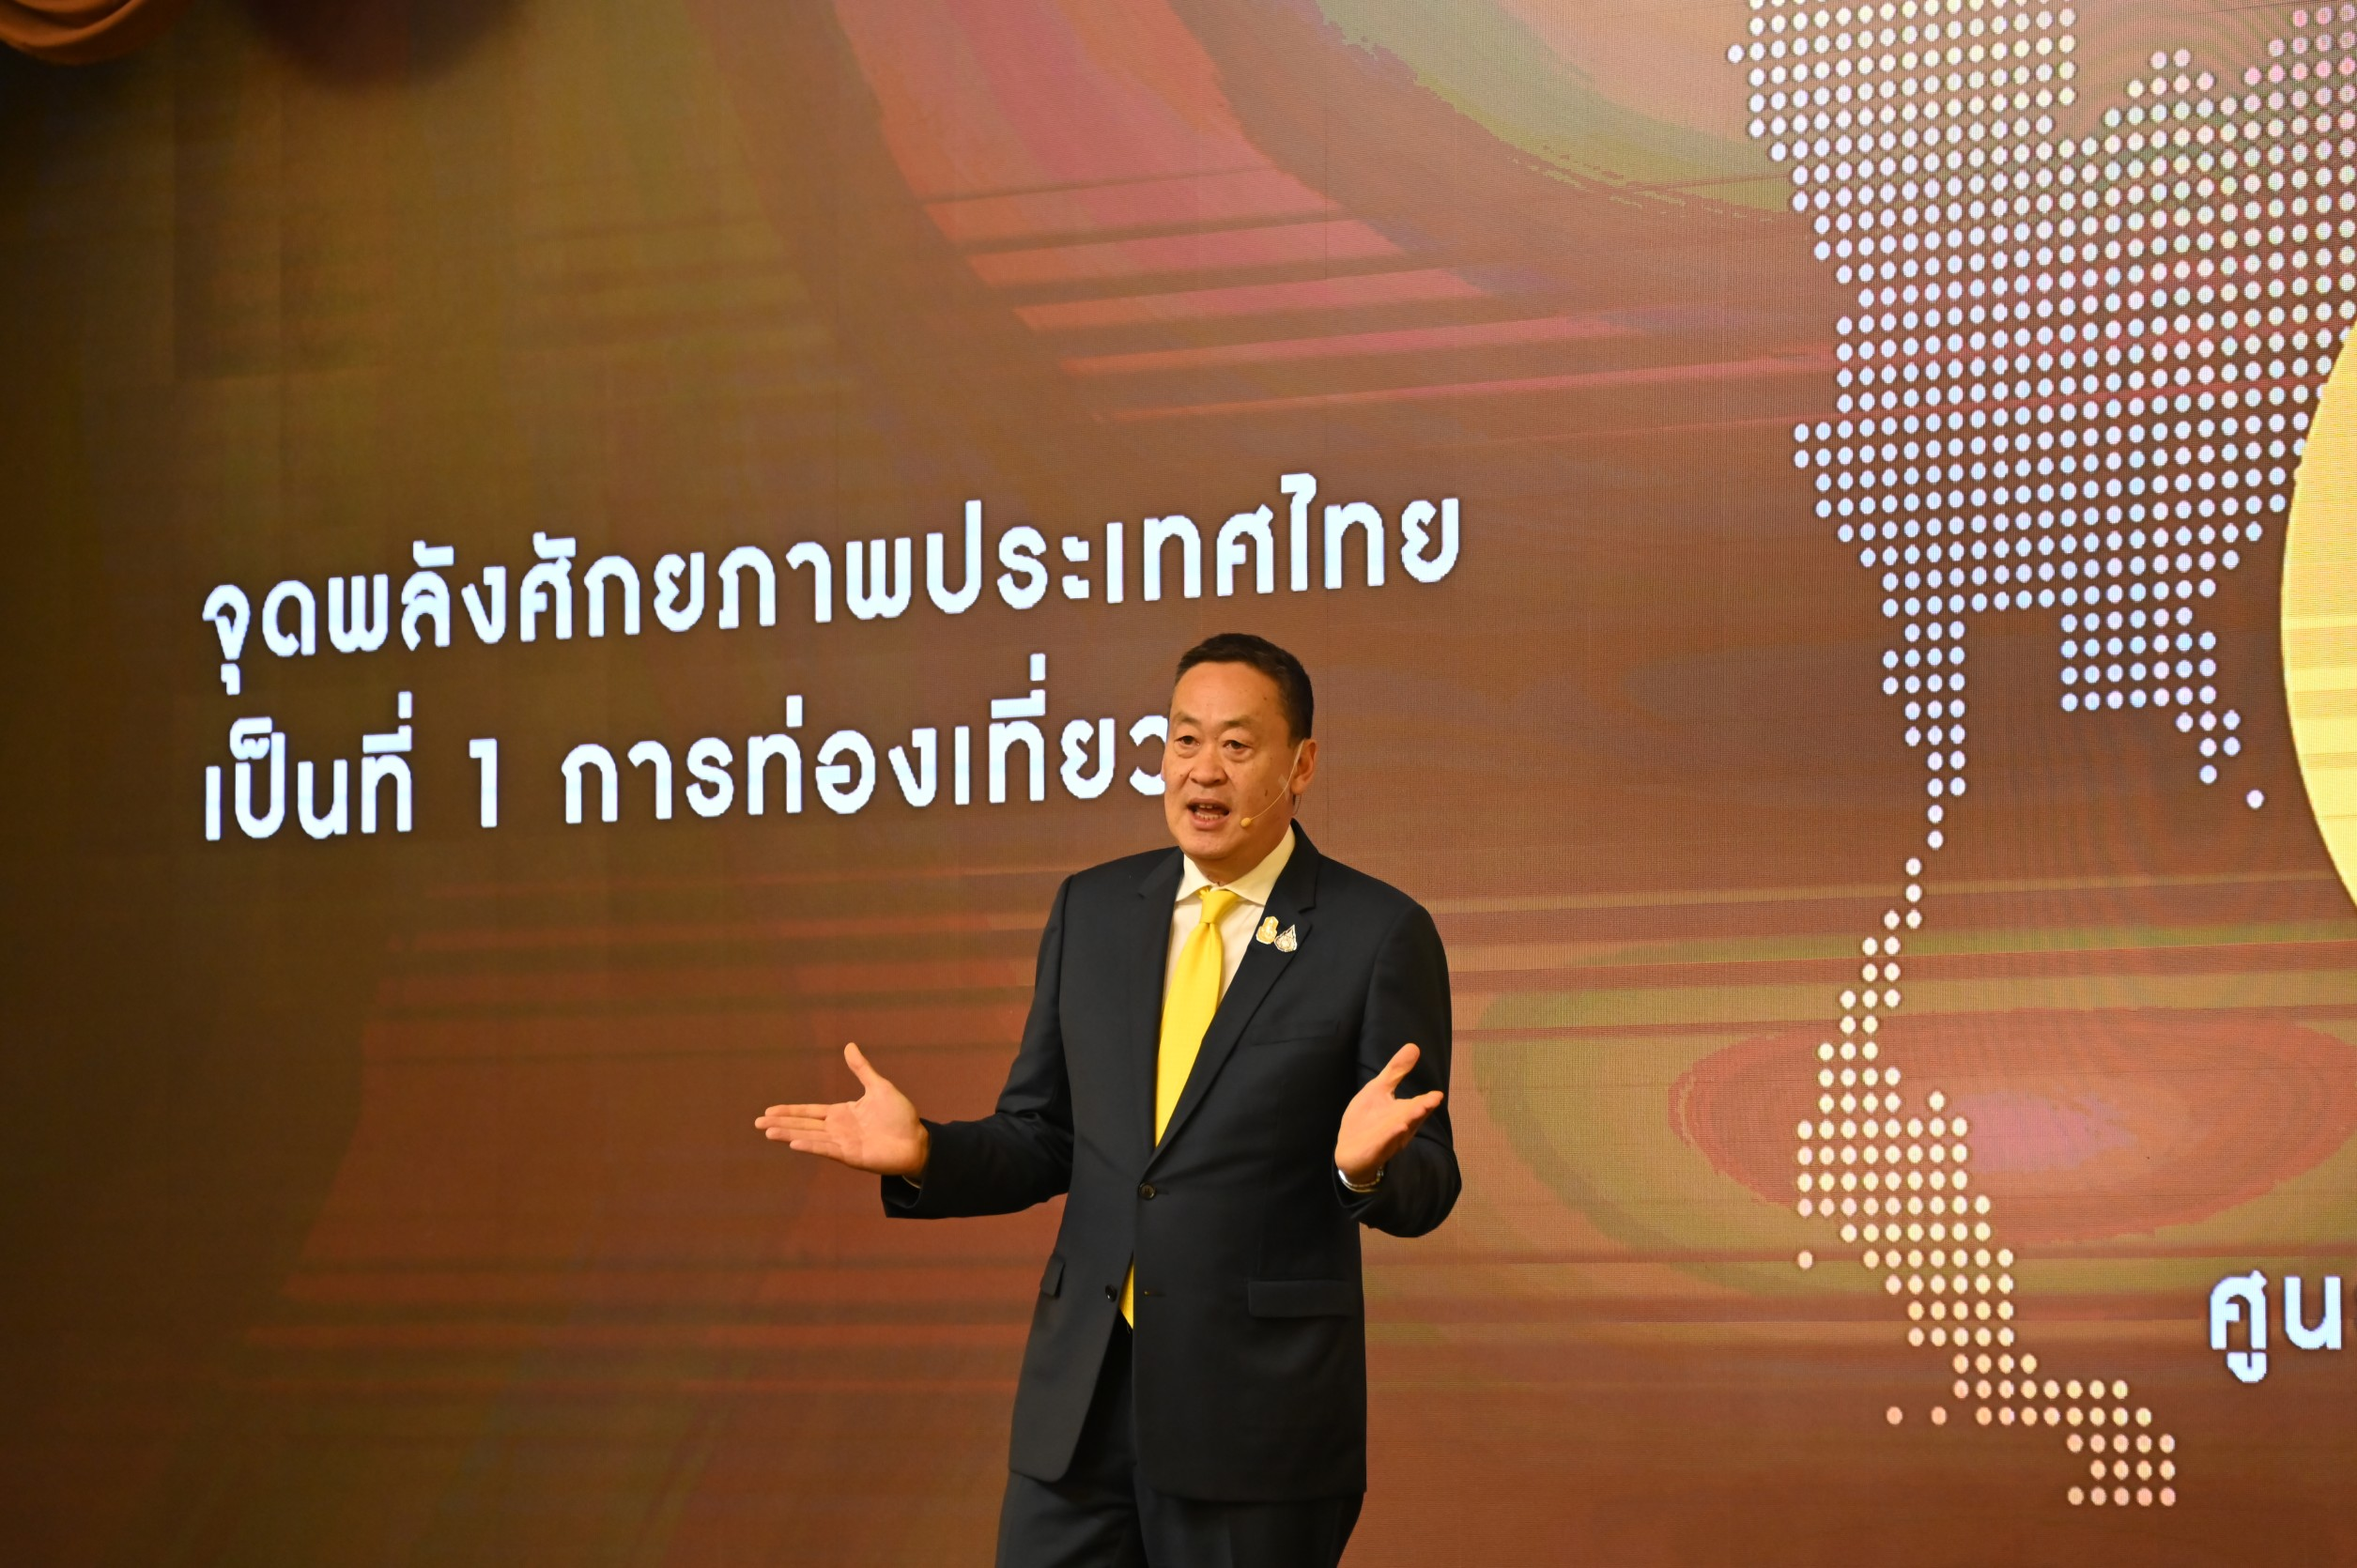 อธิบดีกรมบังคับคดี เข้าร่วมงาน “IGNITE THAILAND จุดพลัง รวมใจ ไทยต้องเป็นหนึ่ง” ยกระดับประเทศไทยสู่ศูนย์กลางเมืองแห่งอุตสาหกรรมระดับโลก